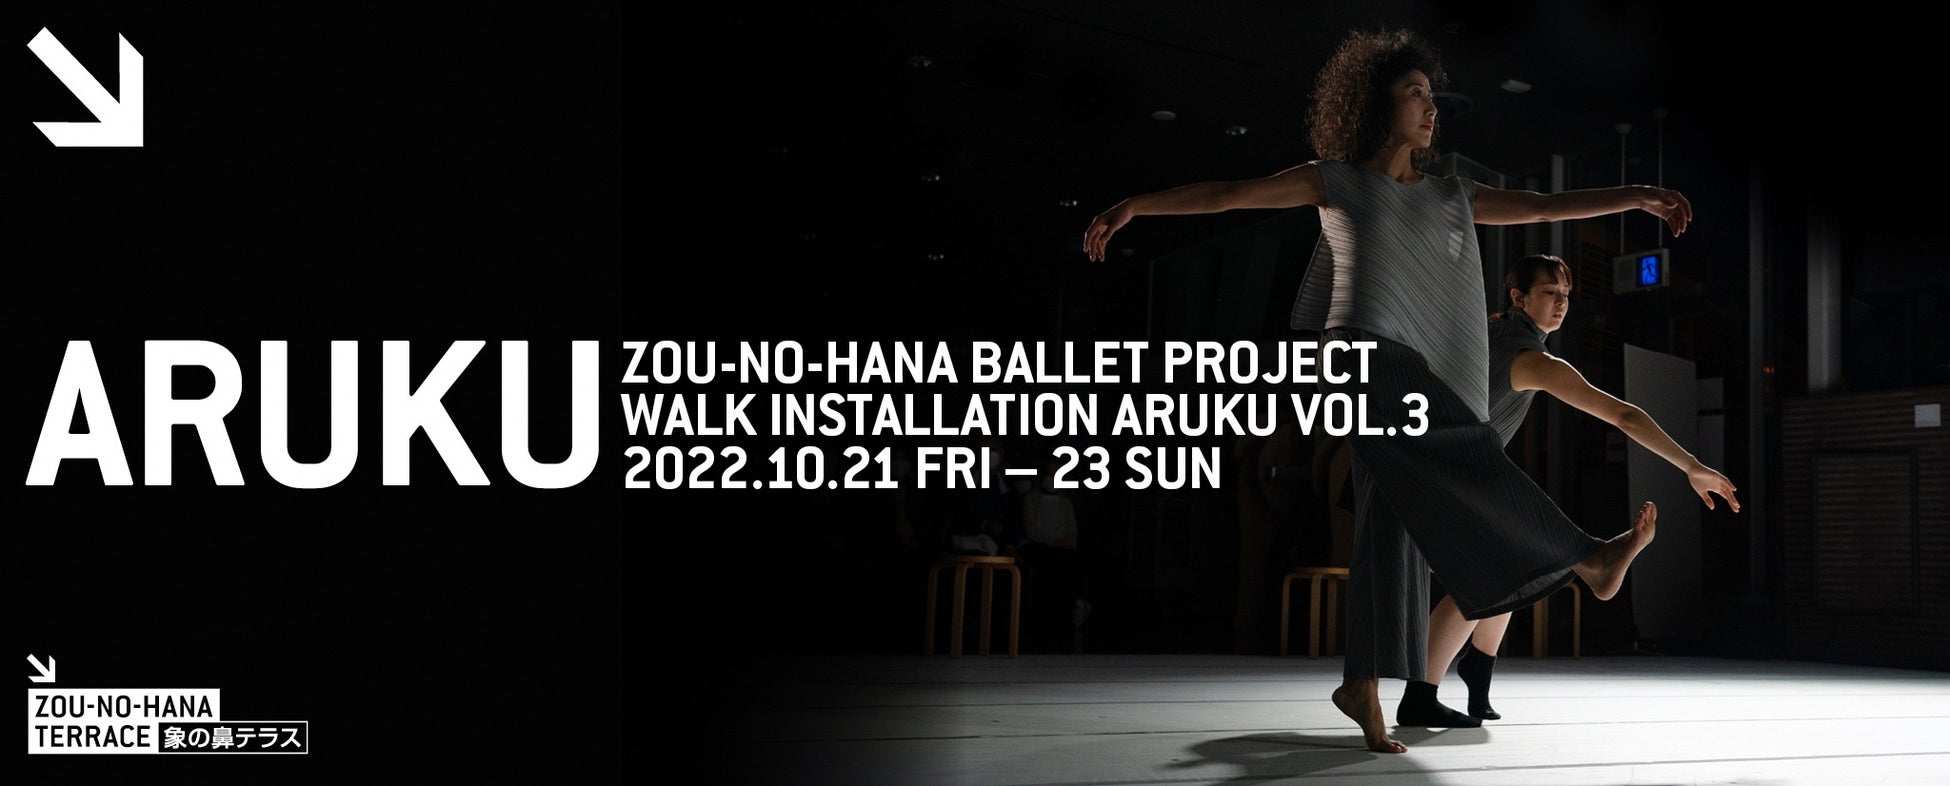 世界の第一線で活躍してきた横浜生まれのアーティスト安藤洋子による実験的パフォーマンスを横浜で上演！表現と身体の可能性を探求するダンスアートプロジェクトのサブ画像1